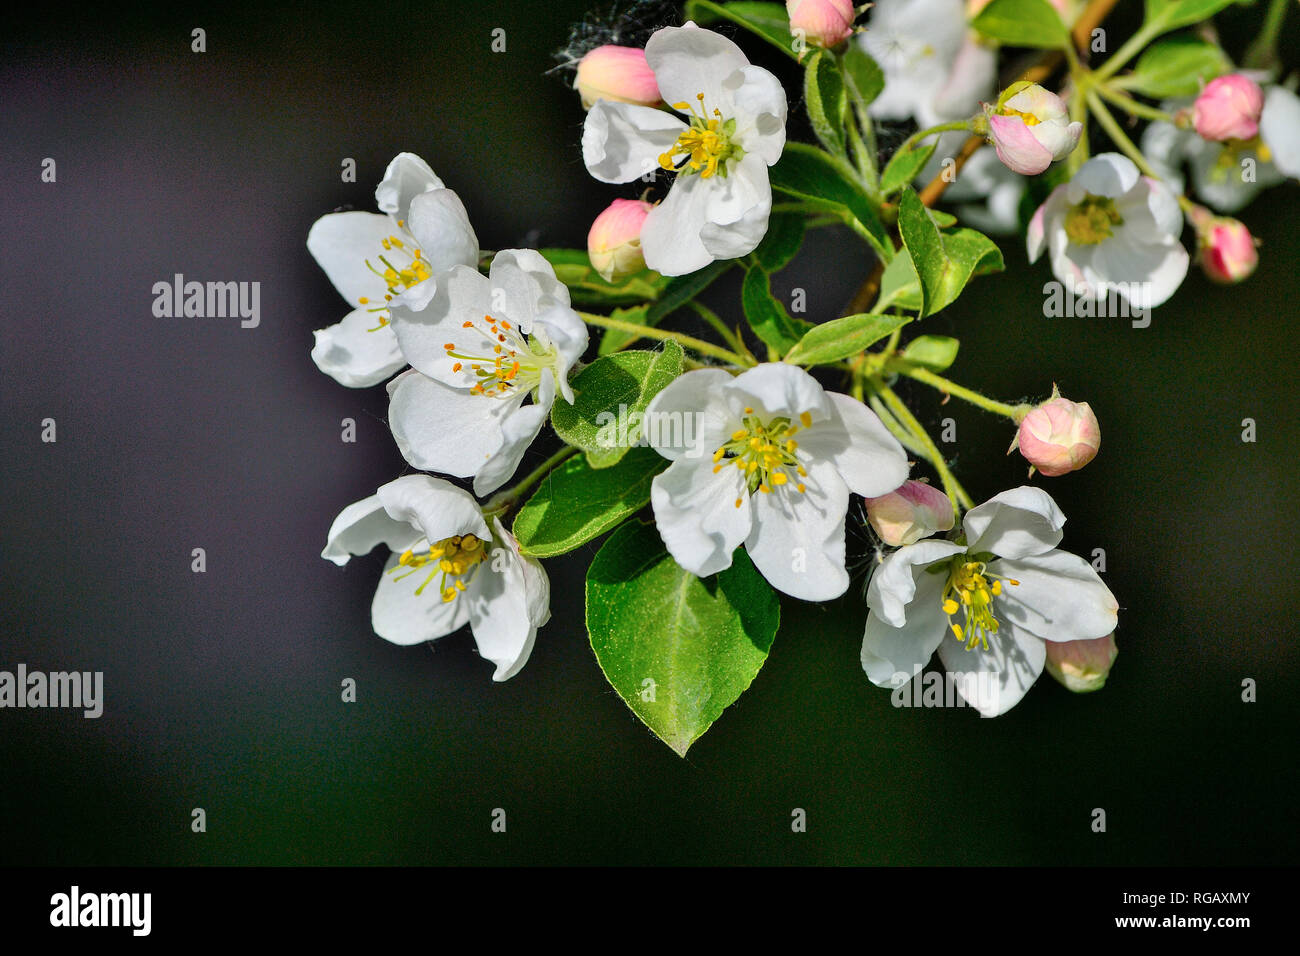 Apple Tree Blossom close up auf dunklem Hintergrund - sanfte Frühling Hintergrund. Apple tree Zweig mit weißen Blumen, rosa Knospen und grüne Blätter - Schönheit o Stockfoto